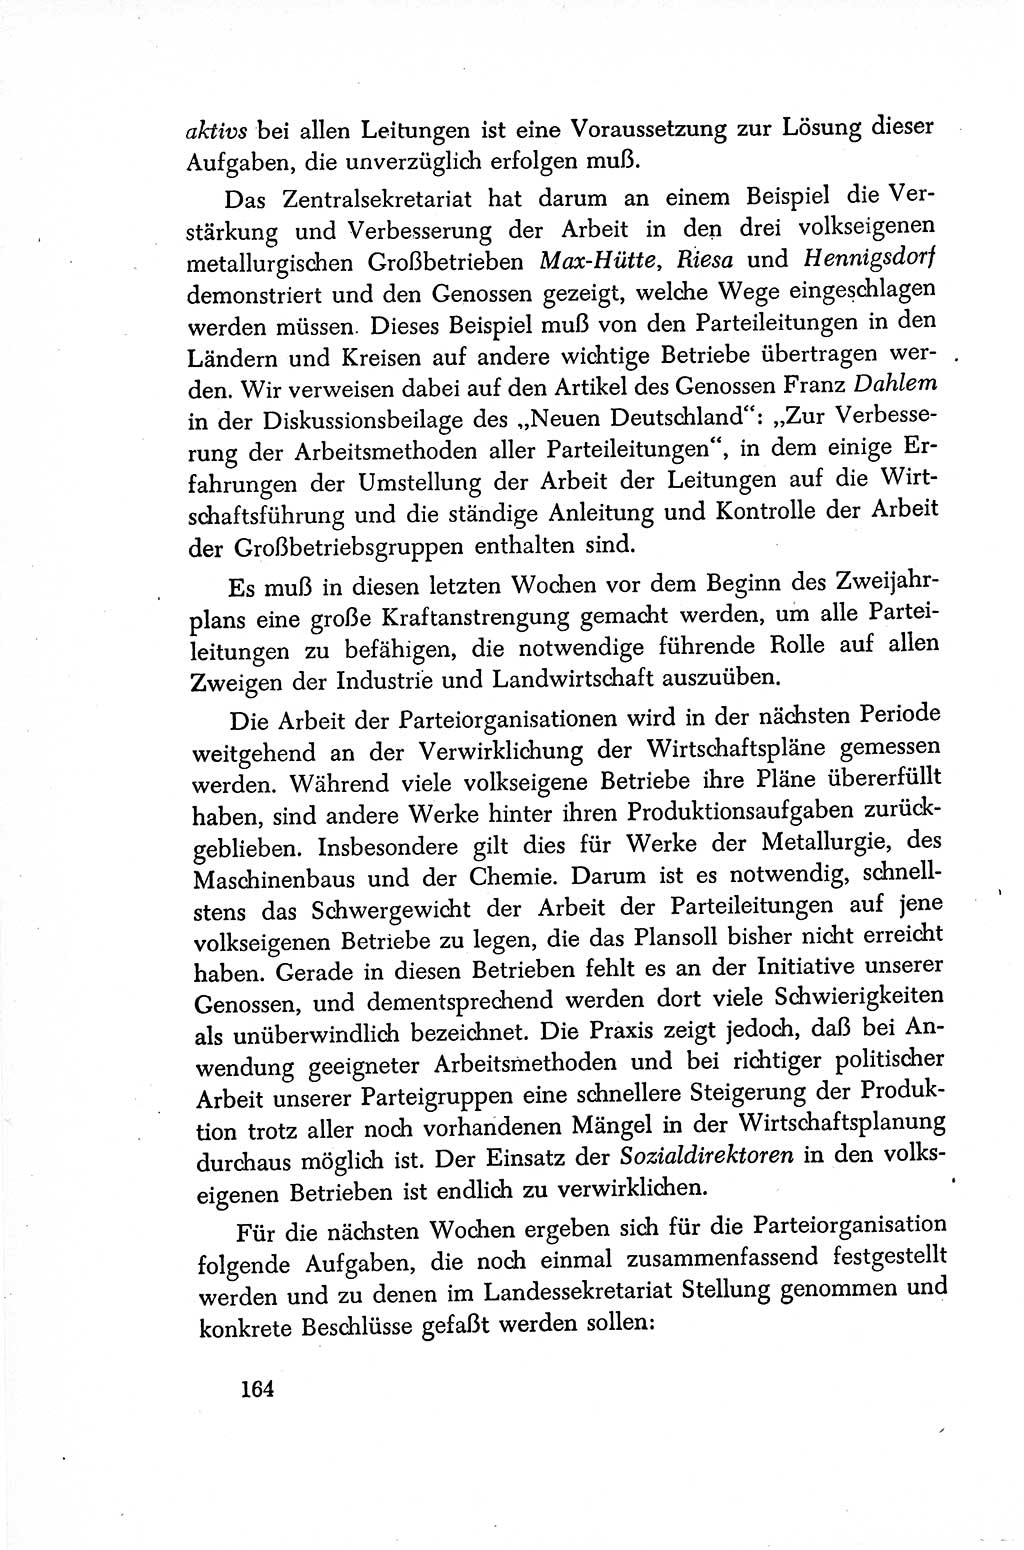 Dokumente der Sozialistischen Einheitspartei Deutschlands (SED) [Sowjetische Besatzungszone (SBZ) Deutschlands/Deutsche Demokratische Republik (DDR)] 1948-1950, Seite 164 (Dok. SED SBZ Dtl. DDR 1948-1950, S. 164)